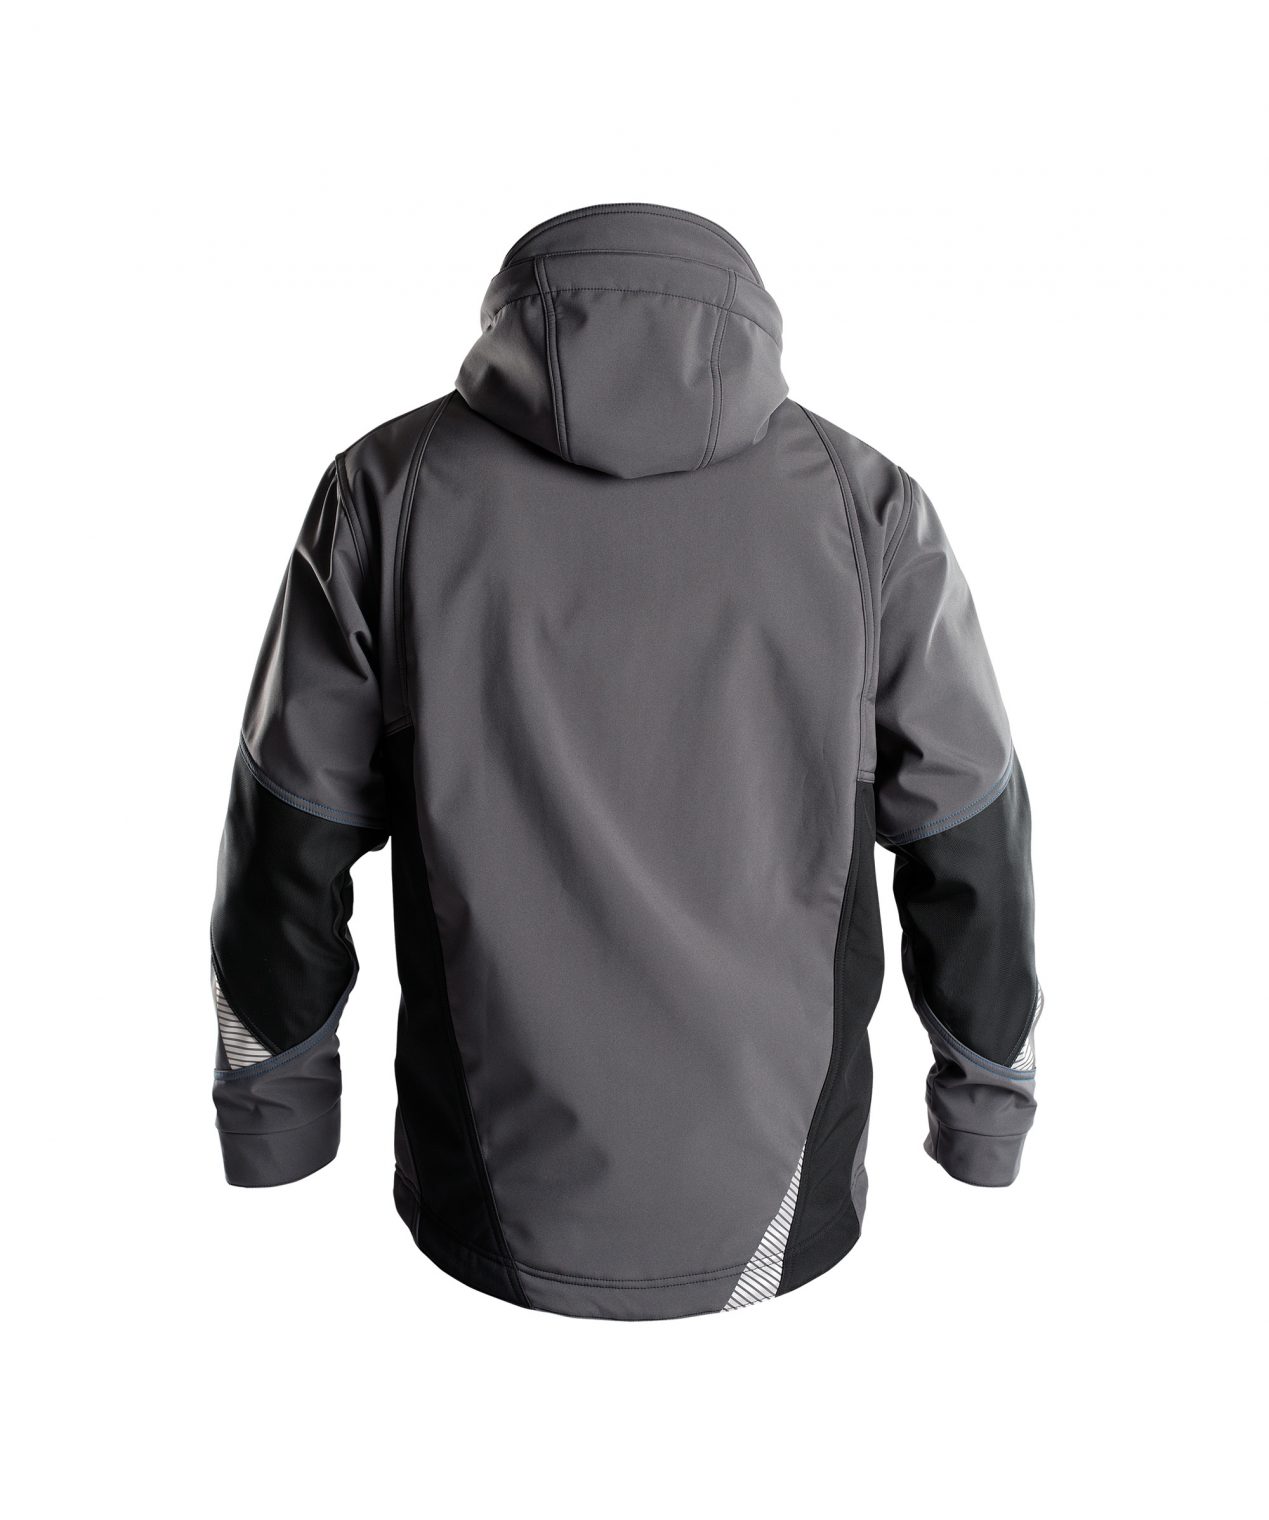 gravity softshell jacket anthracite grey black back